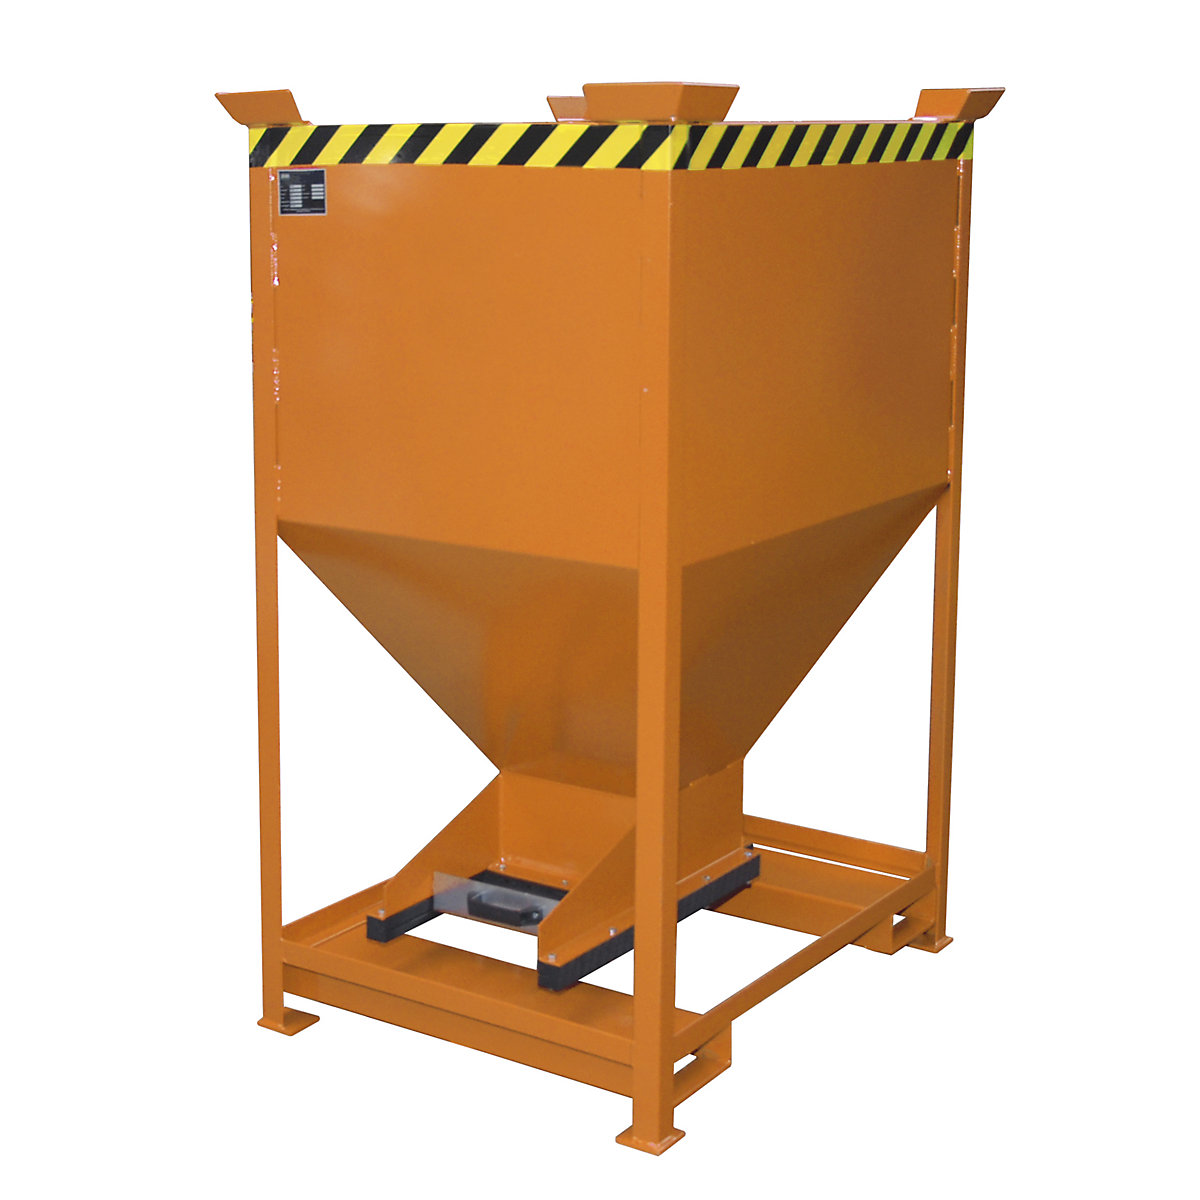 Conteneur-silo en forme d'entonnoir – eurokraft pro, fixe avec passages pour fourches, volume 0,6 m³, orange jaune-5